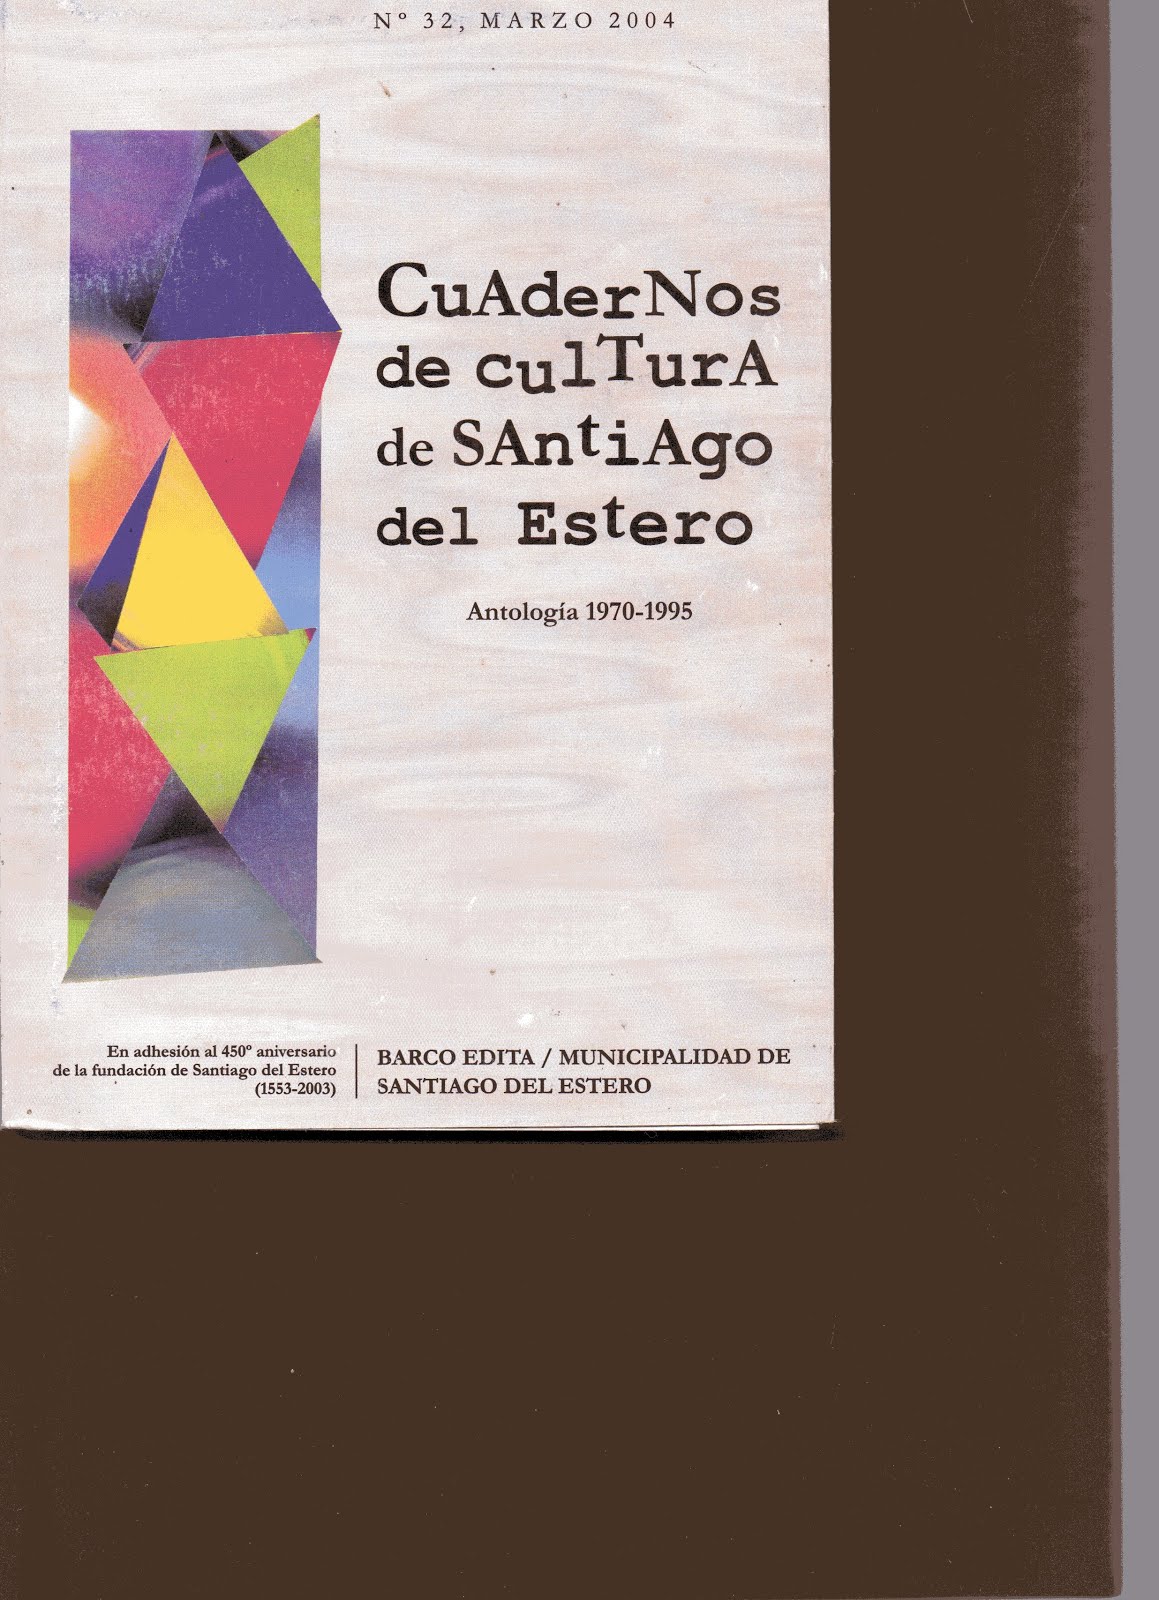 Cuadernos de Cultura 1970-1995